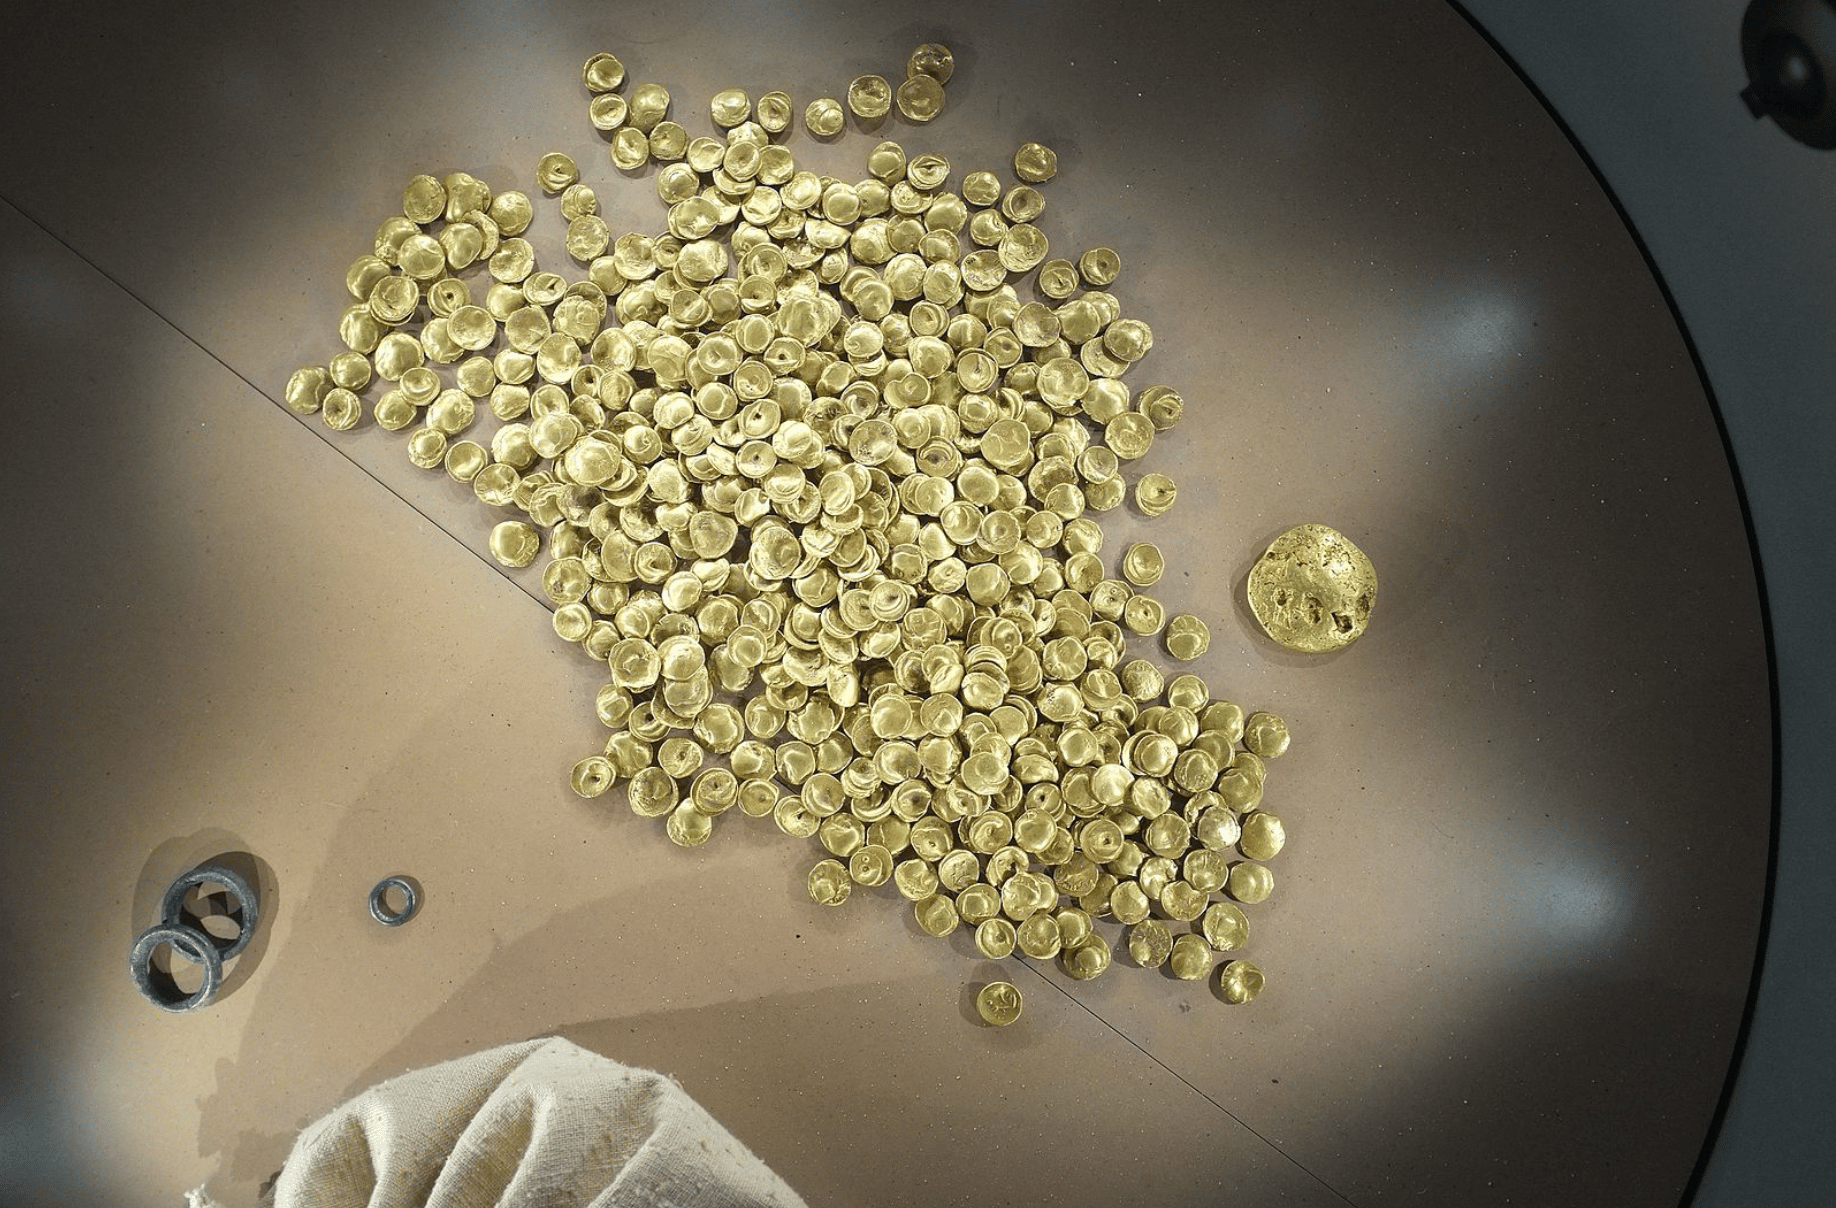 Der Verlust ist unermesslich. Gestern wurde im Kelten Römer Museum in Manching der keltische Goldschatz von Manching gestohlen. Foto: © Wikimedia commons / Chrisi1964